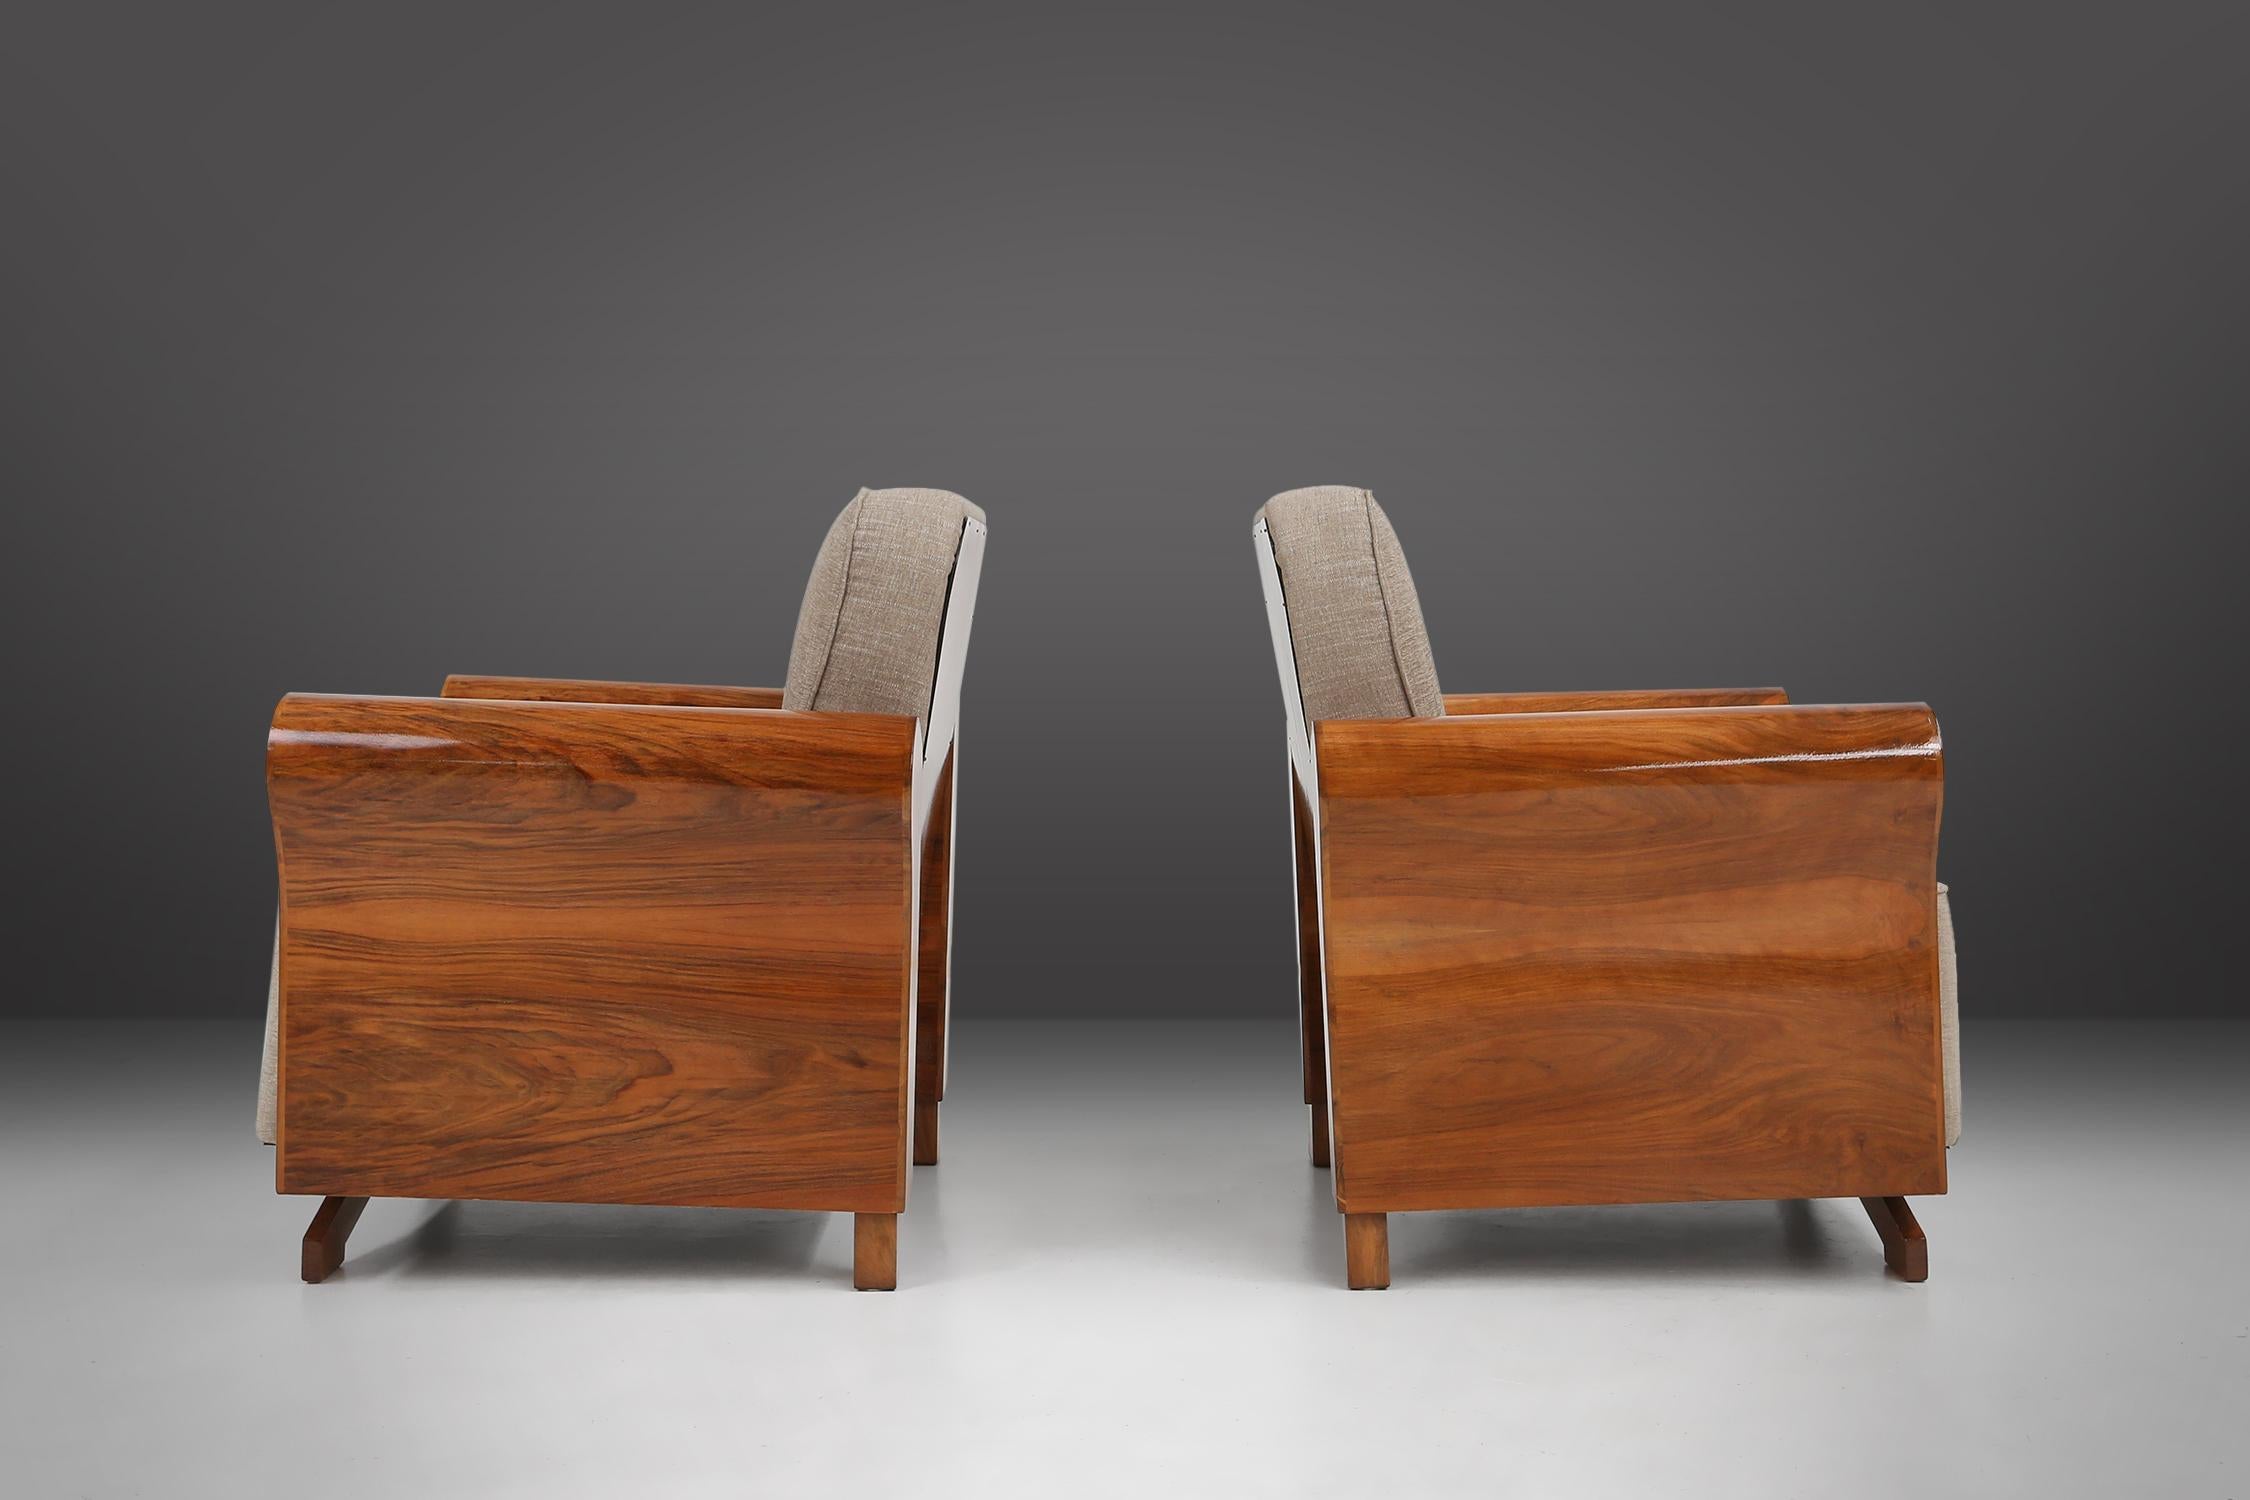 Frankreich / 1930 / 2 Sessel / Walnussfurnier und graue Polsterung / Art Deco

Ein sehr stilvolles und sehr gut verarbeitetes Paar Art-Déco-Sessel, die in den 1930er Jahren in Frankreich hergestellt wurden. Diese Sessel werden aus den besten